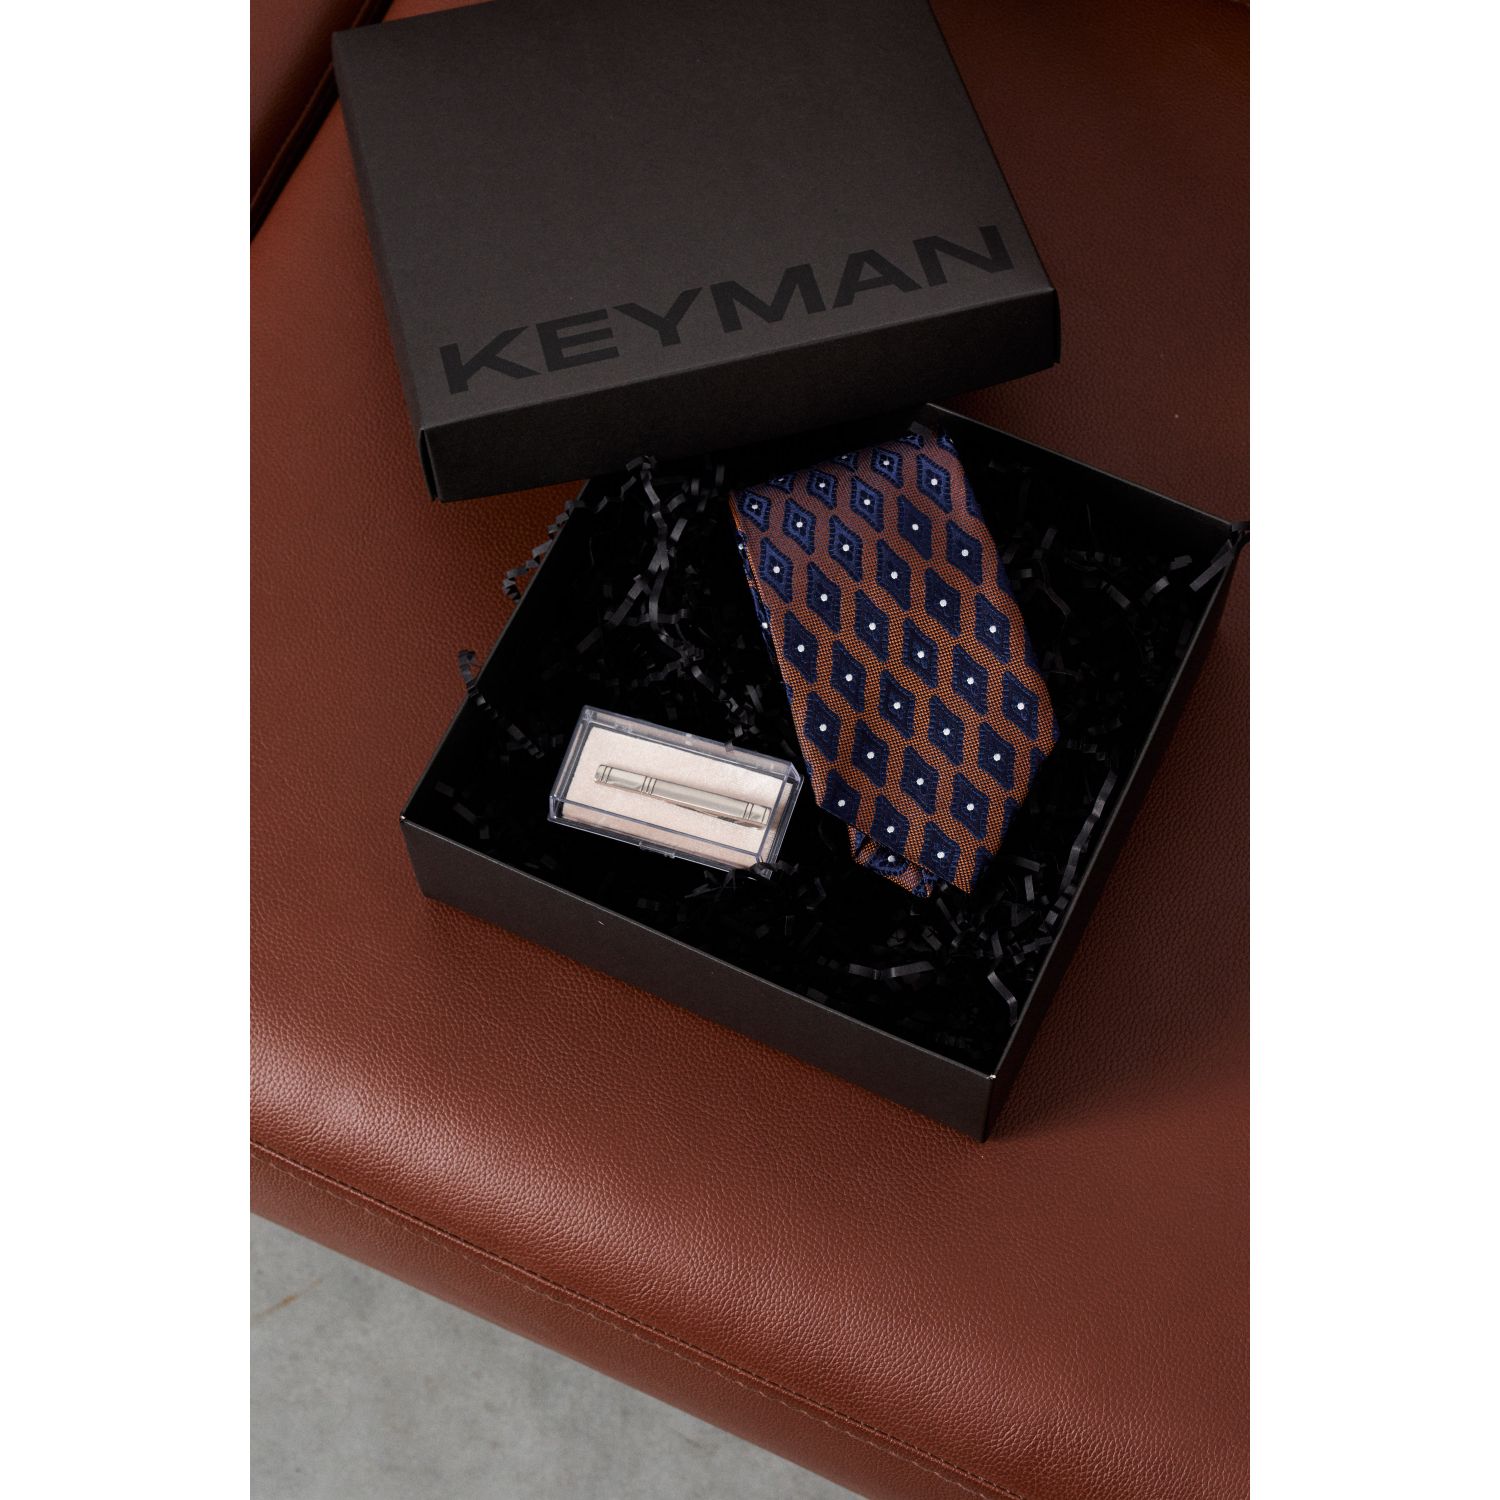 Пример подарочного набора Keyman (фирменная коробочка, галстук итальянский шелк и зажим)